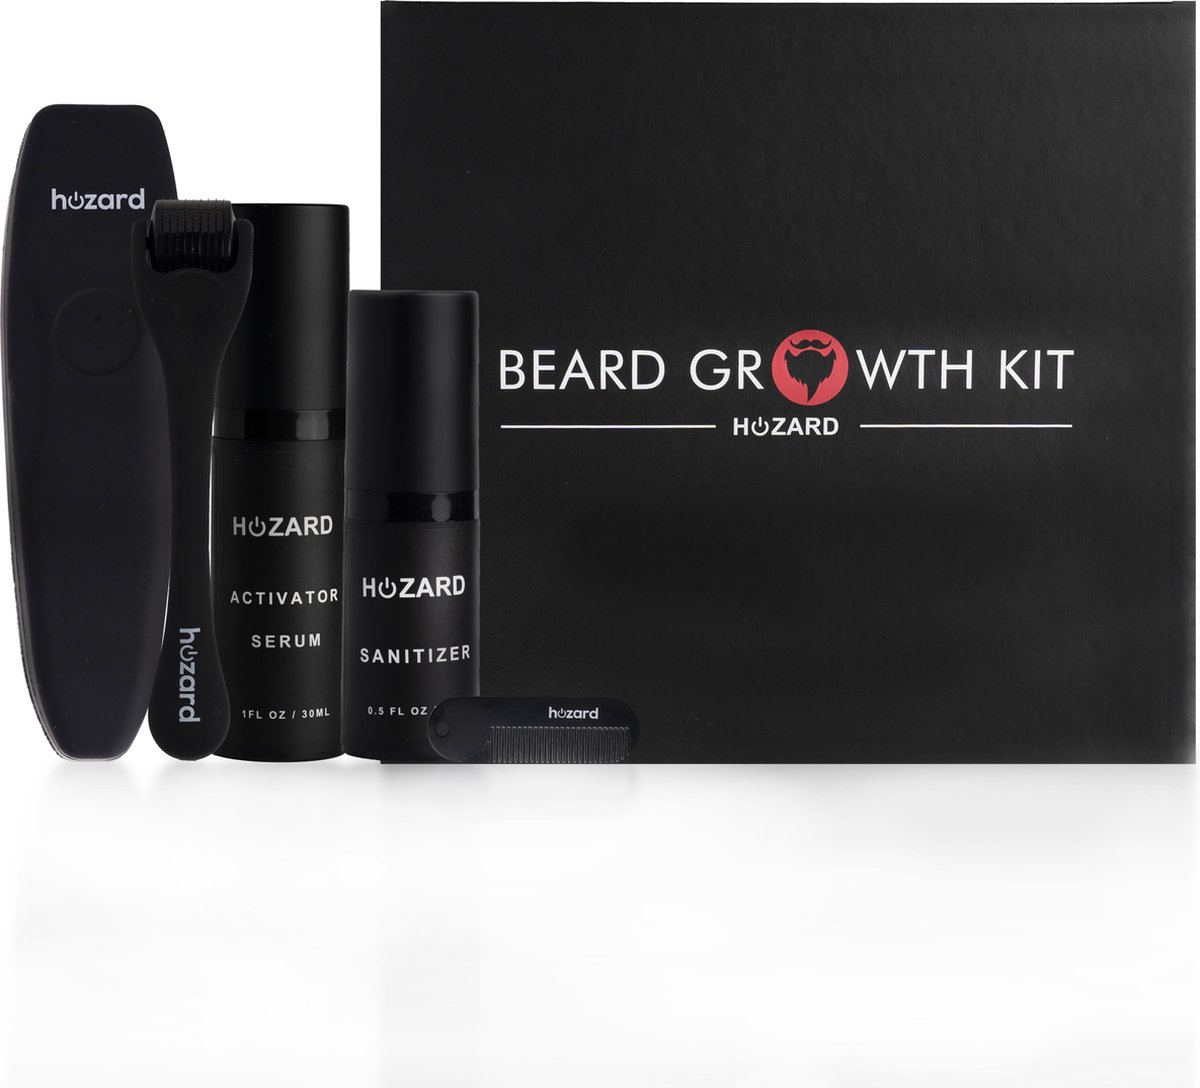 Hozard® Baardgroei Kit met Dermaroller - baardolie- Cadeau voor mannen - Baardgroei stimuleren - Baard serum - Baardgroei olie - Derma roller - Verzorg set - Baard verzorging - Giftset - Beard Growth Kit